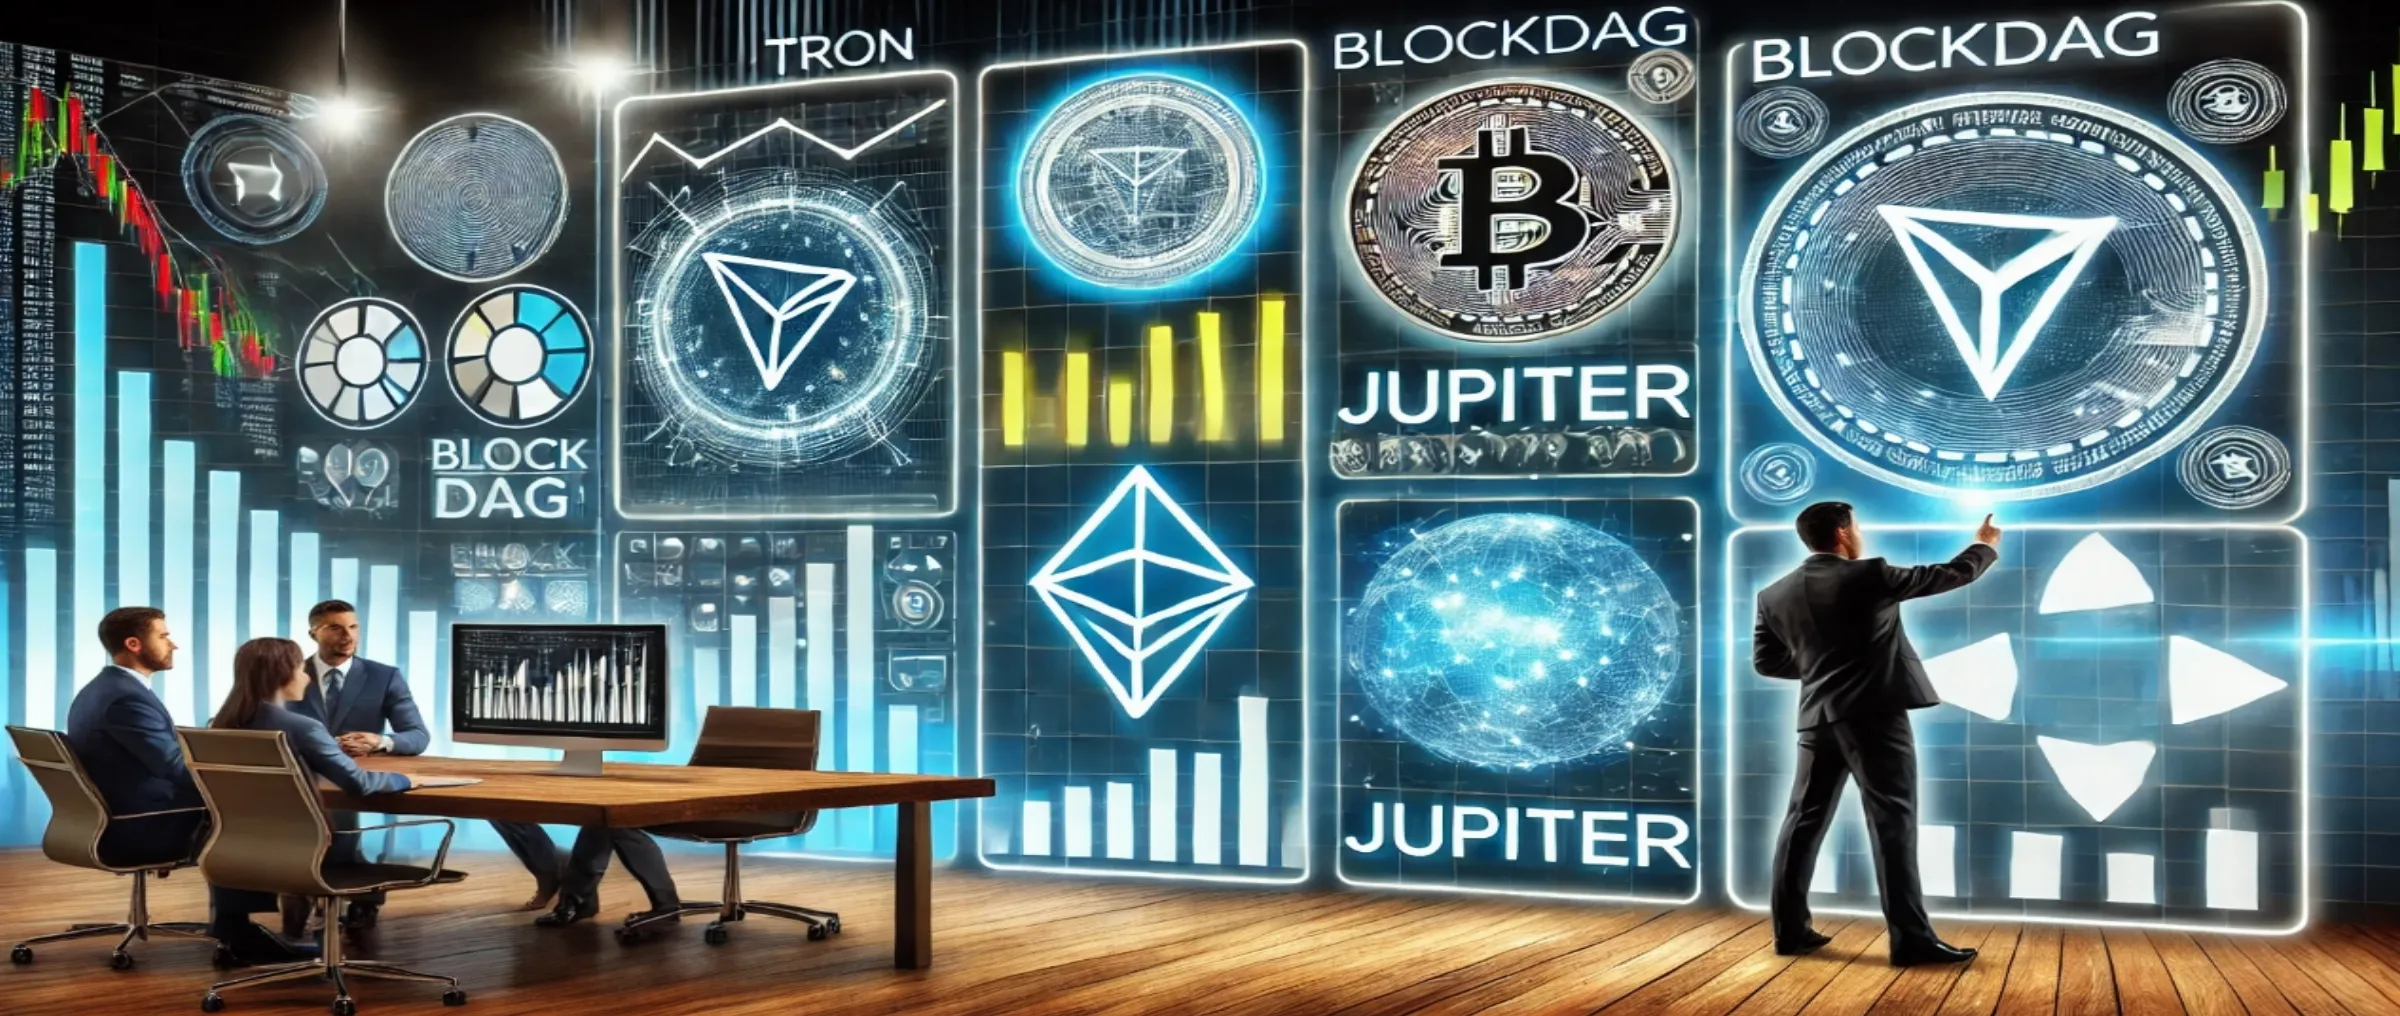 Актуальные тенденции рынка криптовалют: TRON, Jupiter и BlockDAG